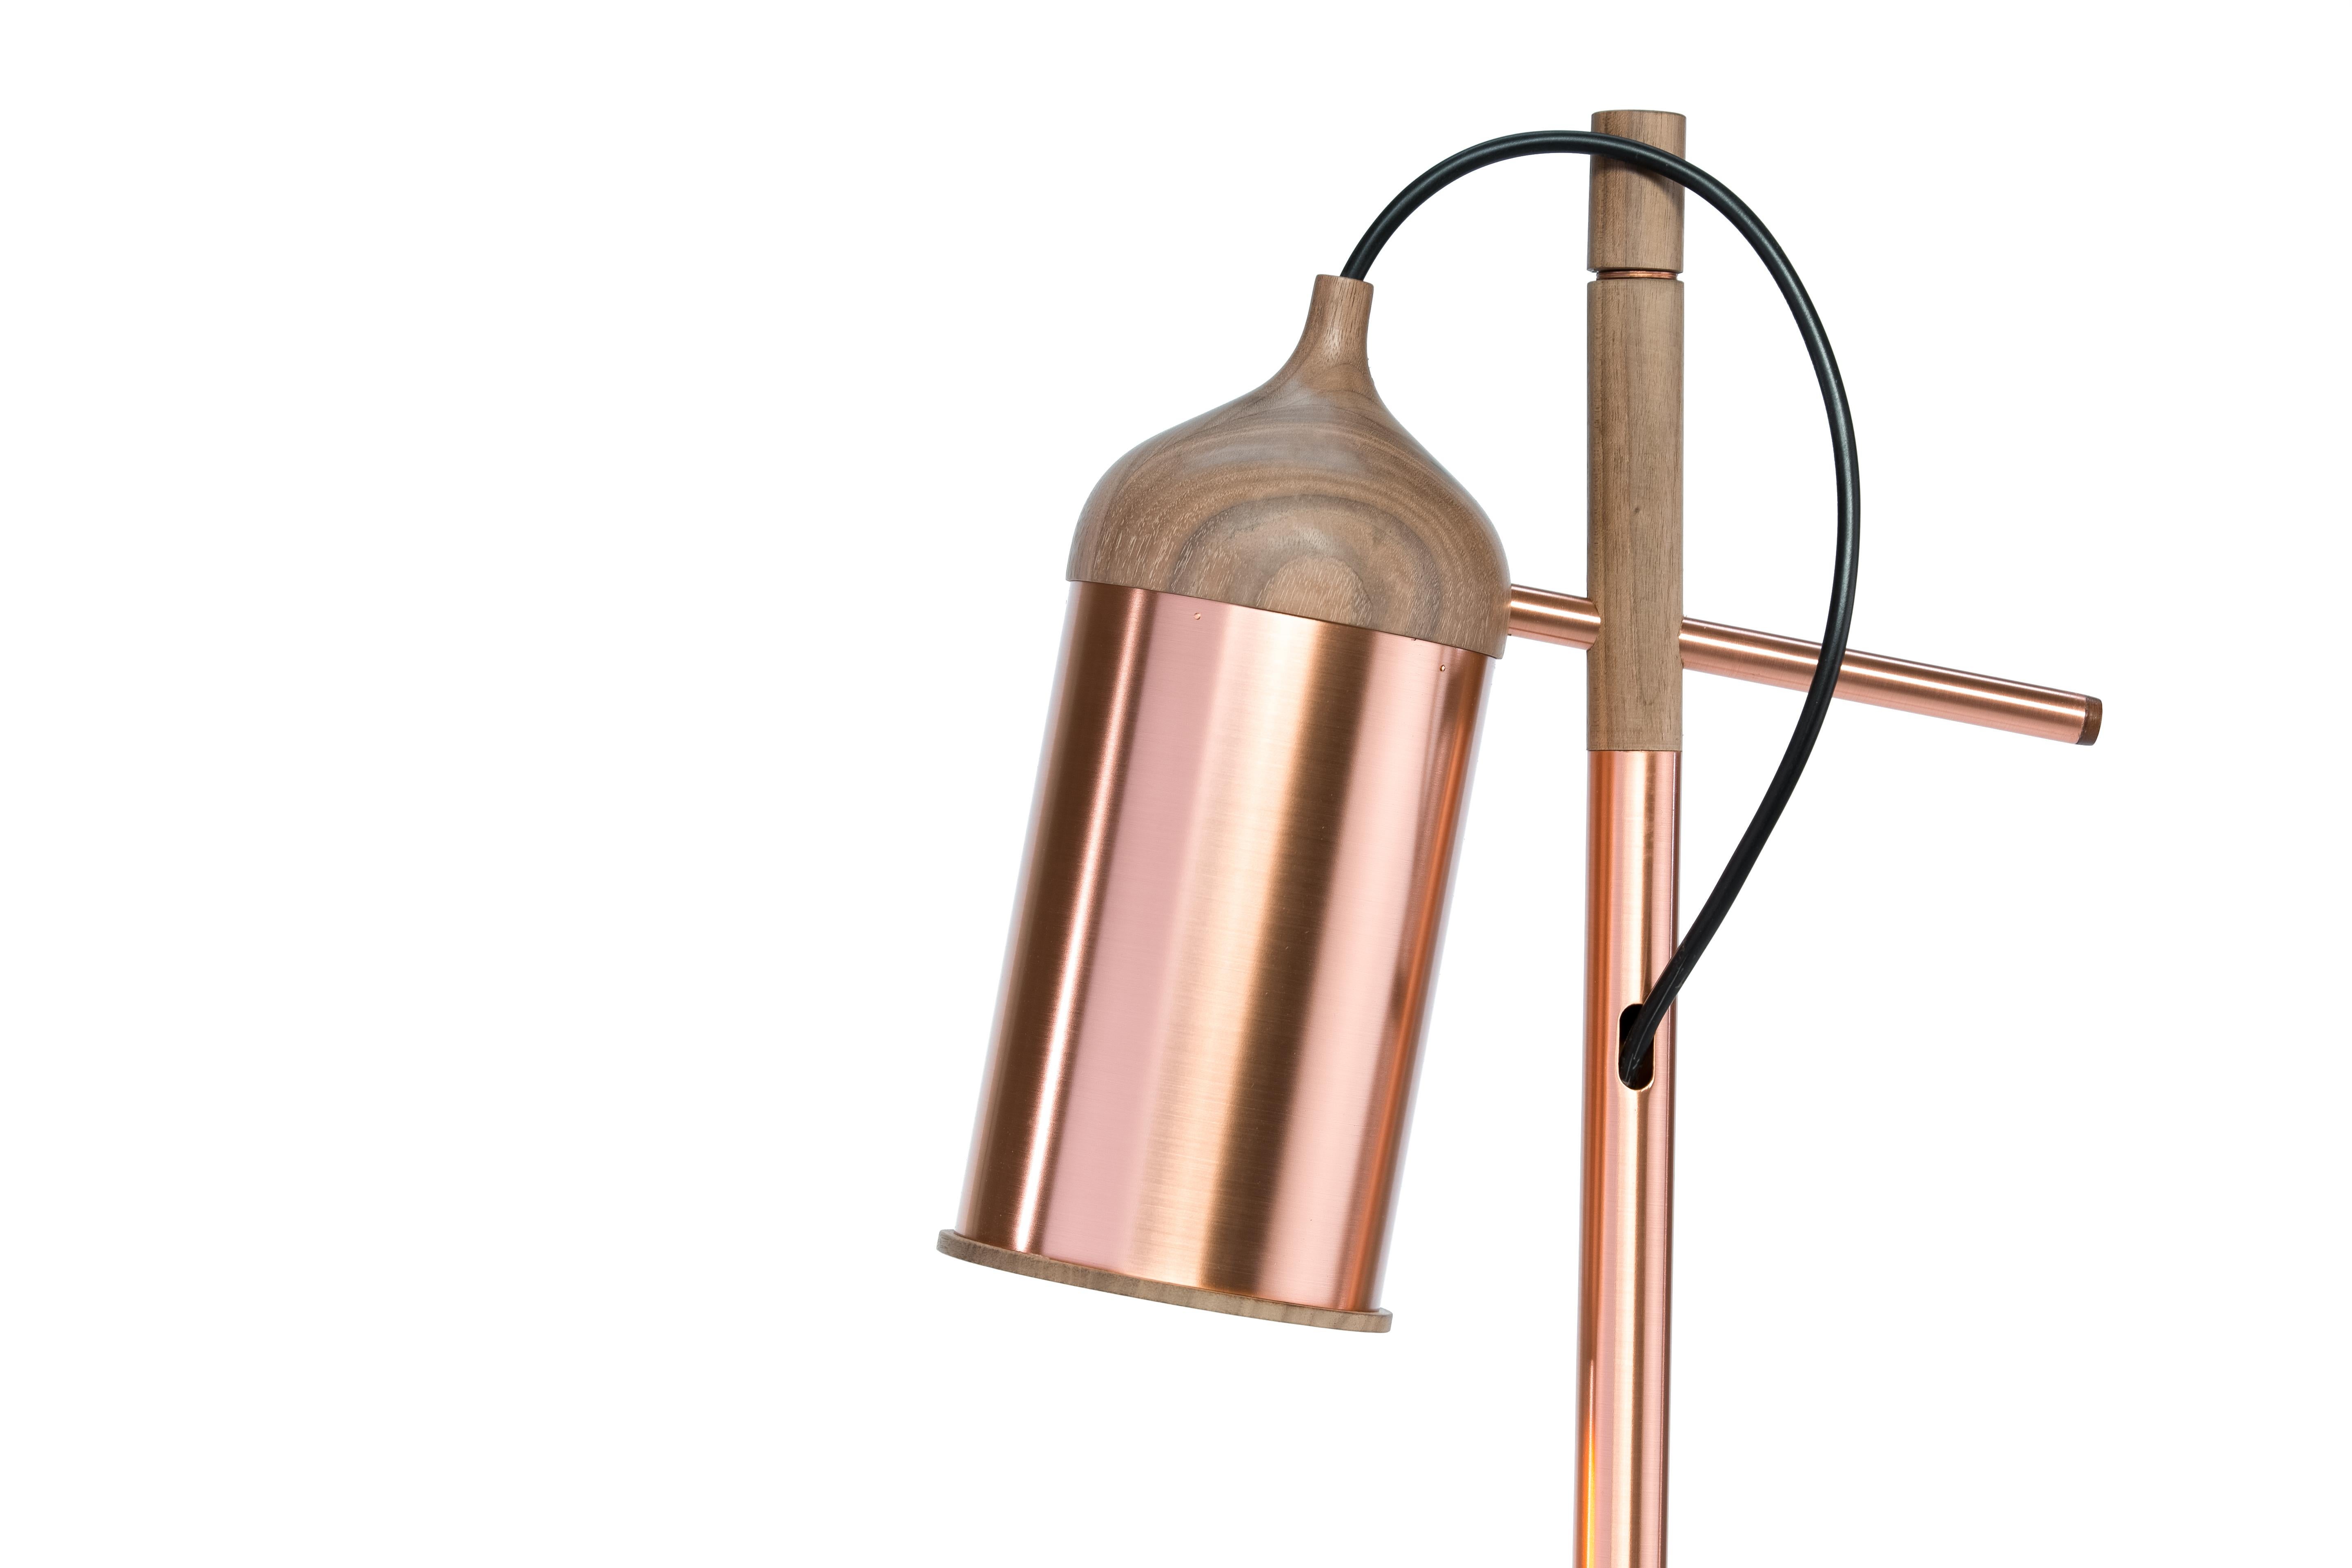 Die Stehleuchte aus Kupfer ist ein einzigartiges Design von Steven Banken als Fortsetzung seiner beliebten Copper Lampe (Anhänger). Der Schirm kann in jede gewünschte Richtung gedreht werden, um maximale Flexibilität zu gewährleisten. Der gewichtige